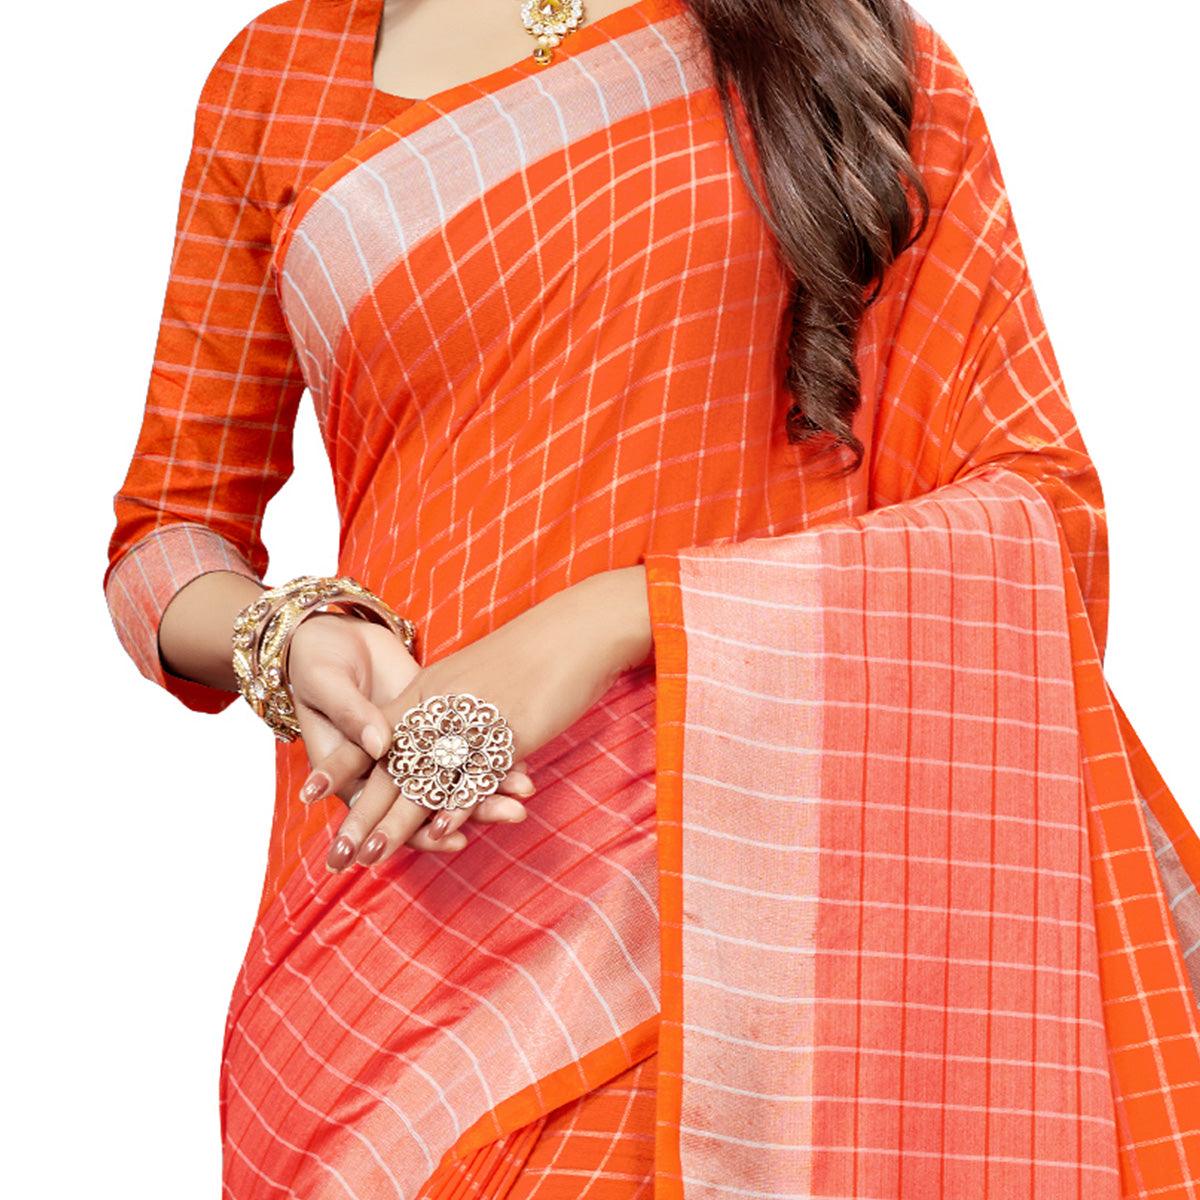 Delightful Orange Colored Fesive Wear Checks Print Cotton Silk Saree With Tassels - Peachmode